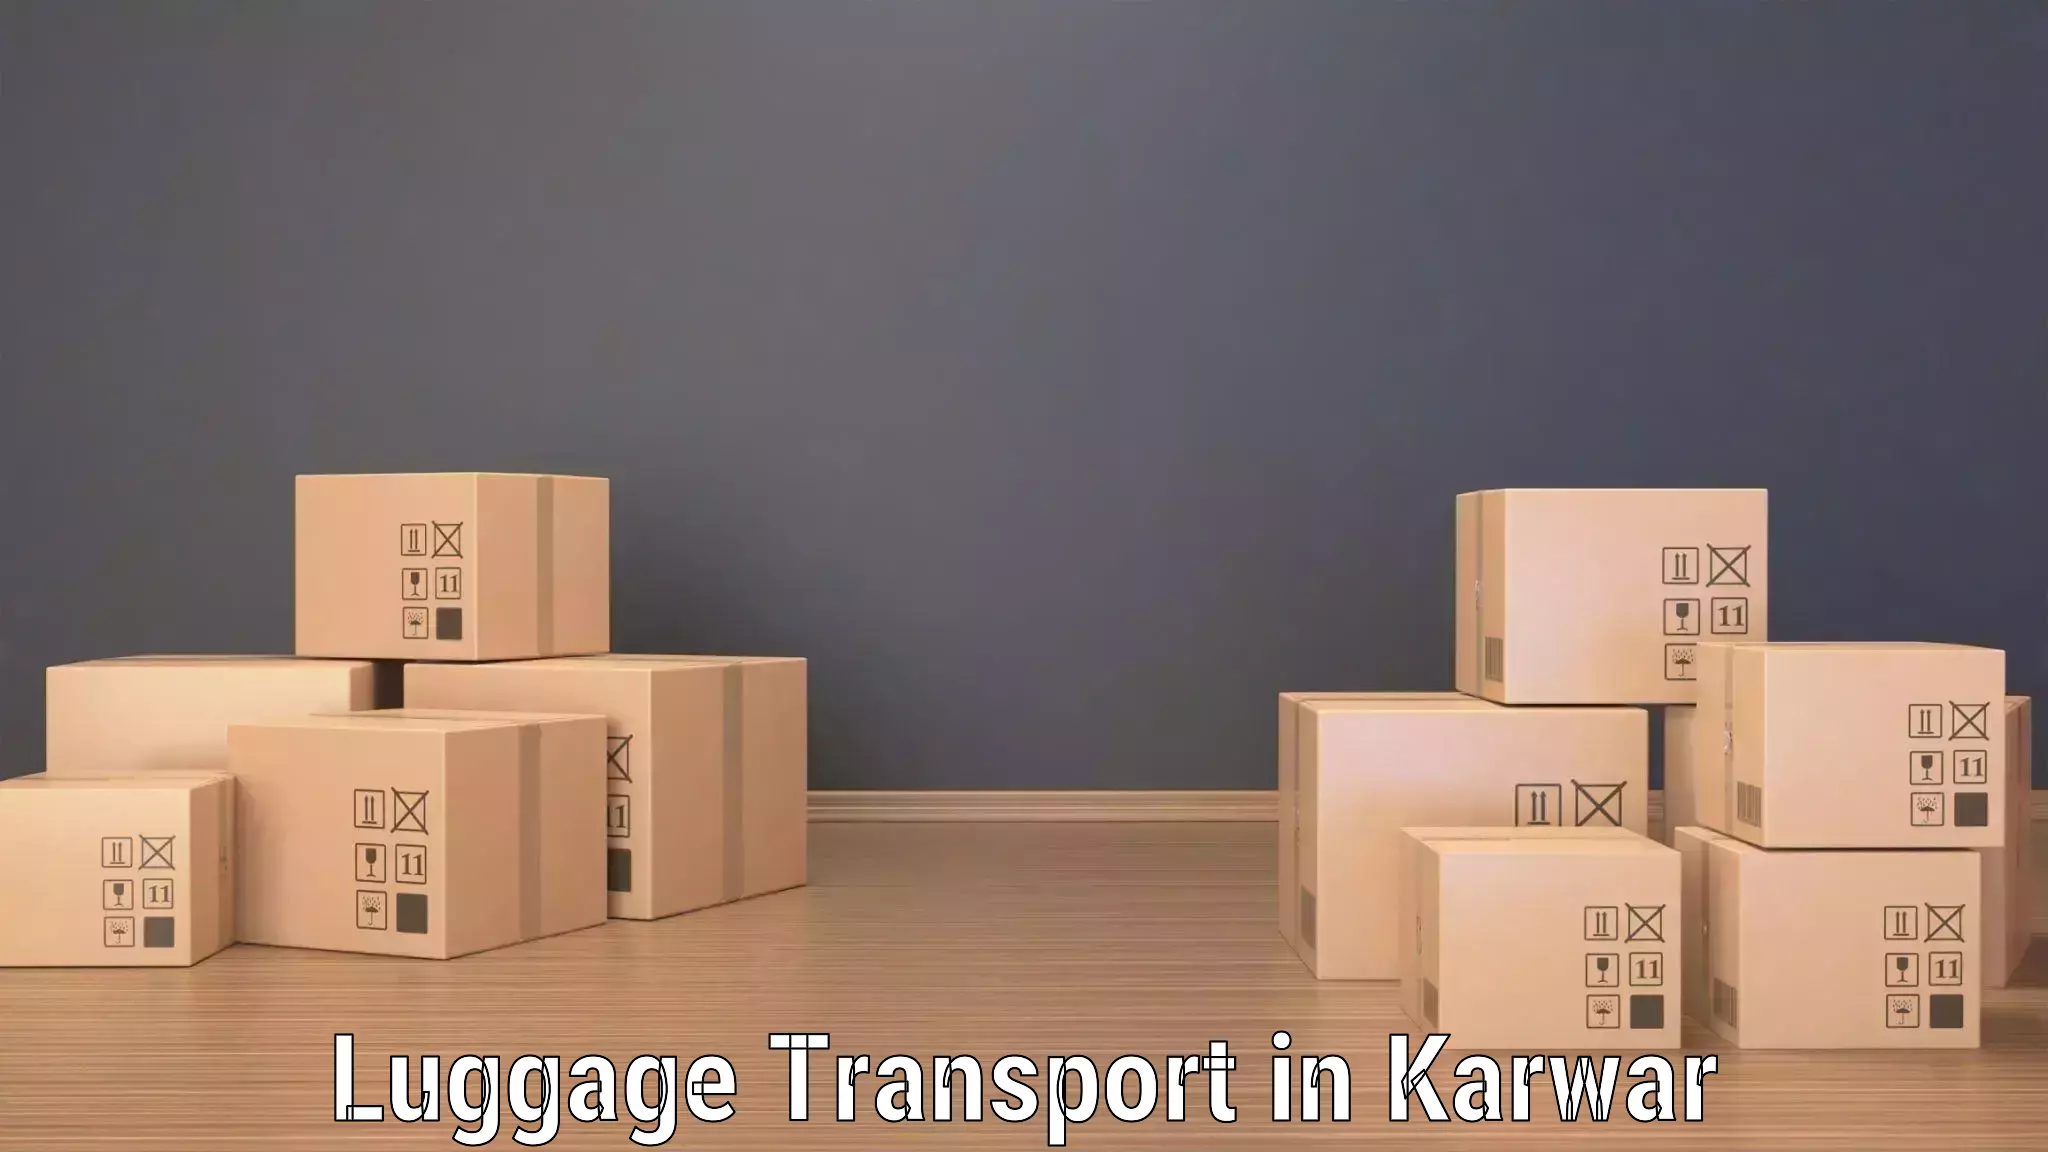 Baggage transport technology in Karwar